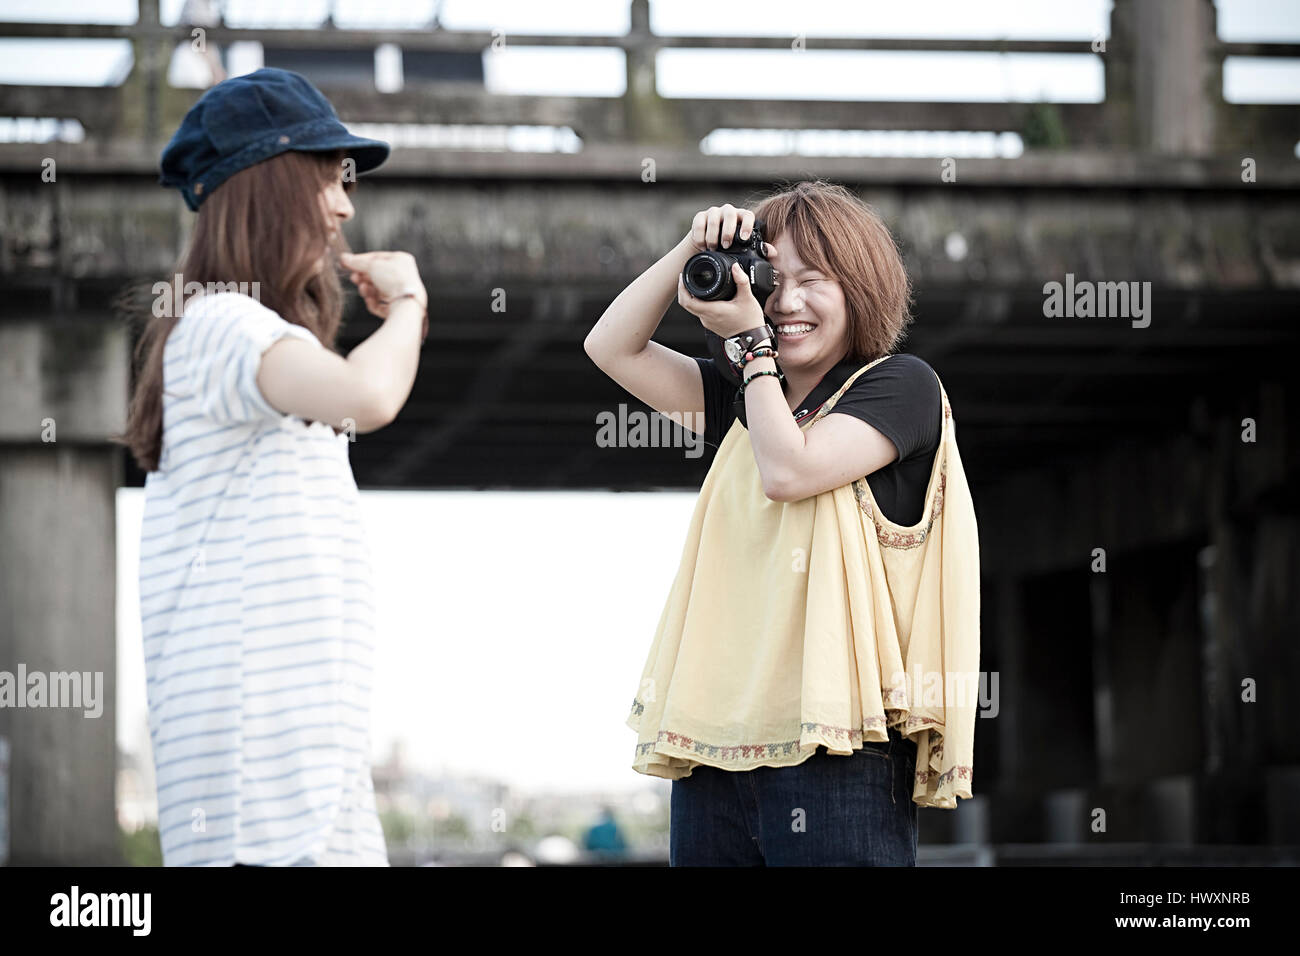 Une Japonaise prend des photos de son ami, le Japon. Banque D'Images